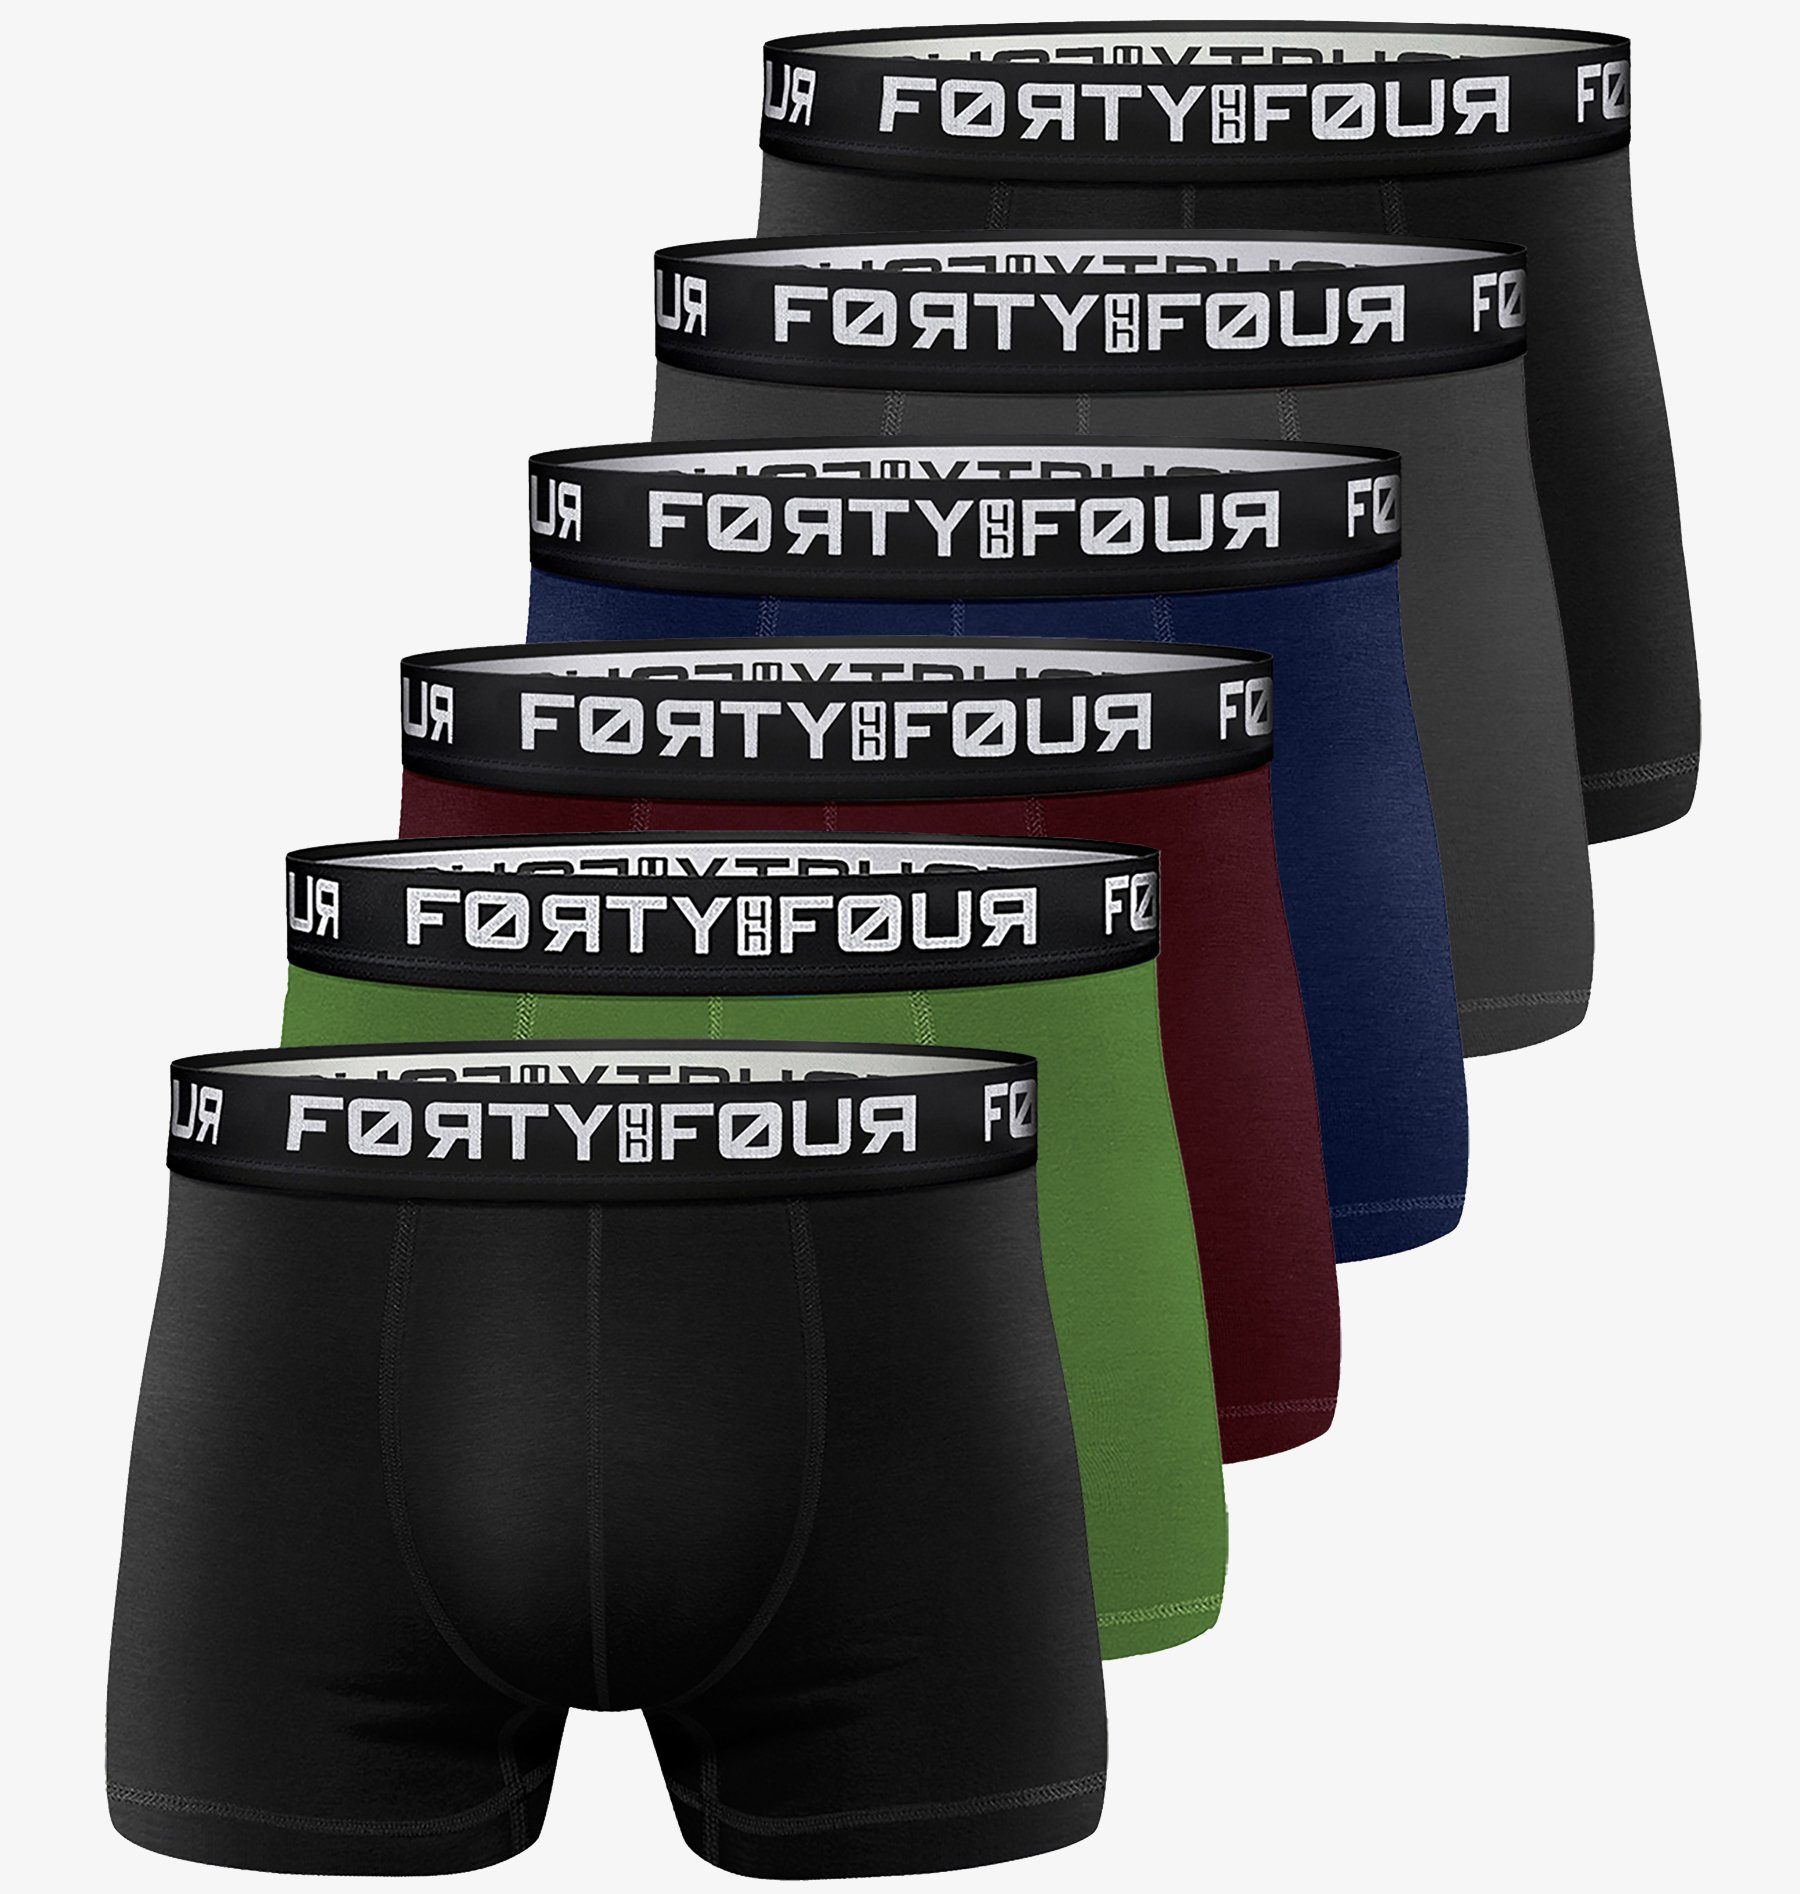 FortyFour Boxershorts Herren Männer Unterhosen Baumwolle Premium Qualität perfekte Passform (Vorteilspack, 6er Pack) S - 7XL 706a-mehrfarbig